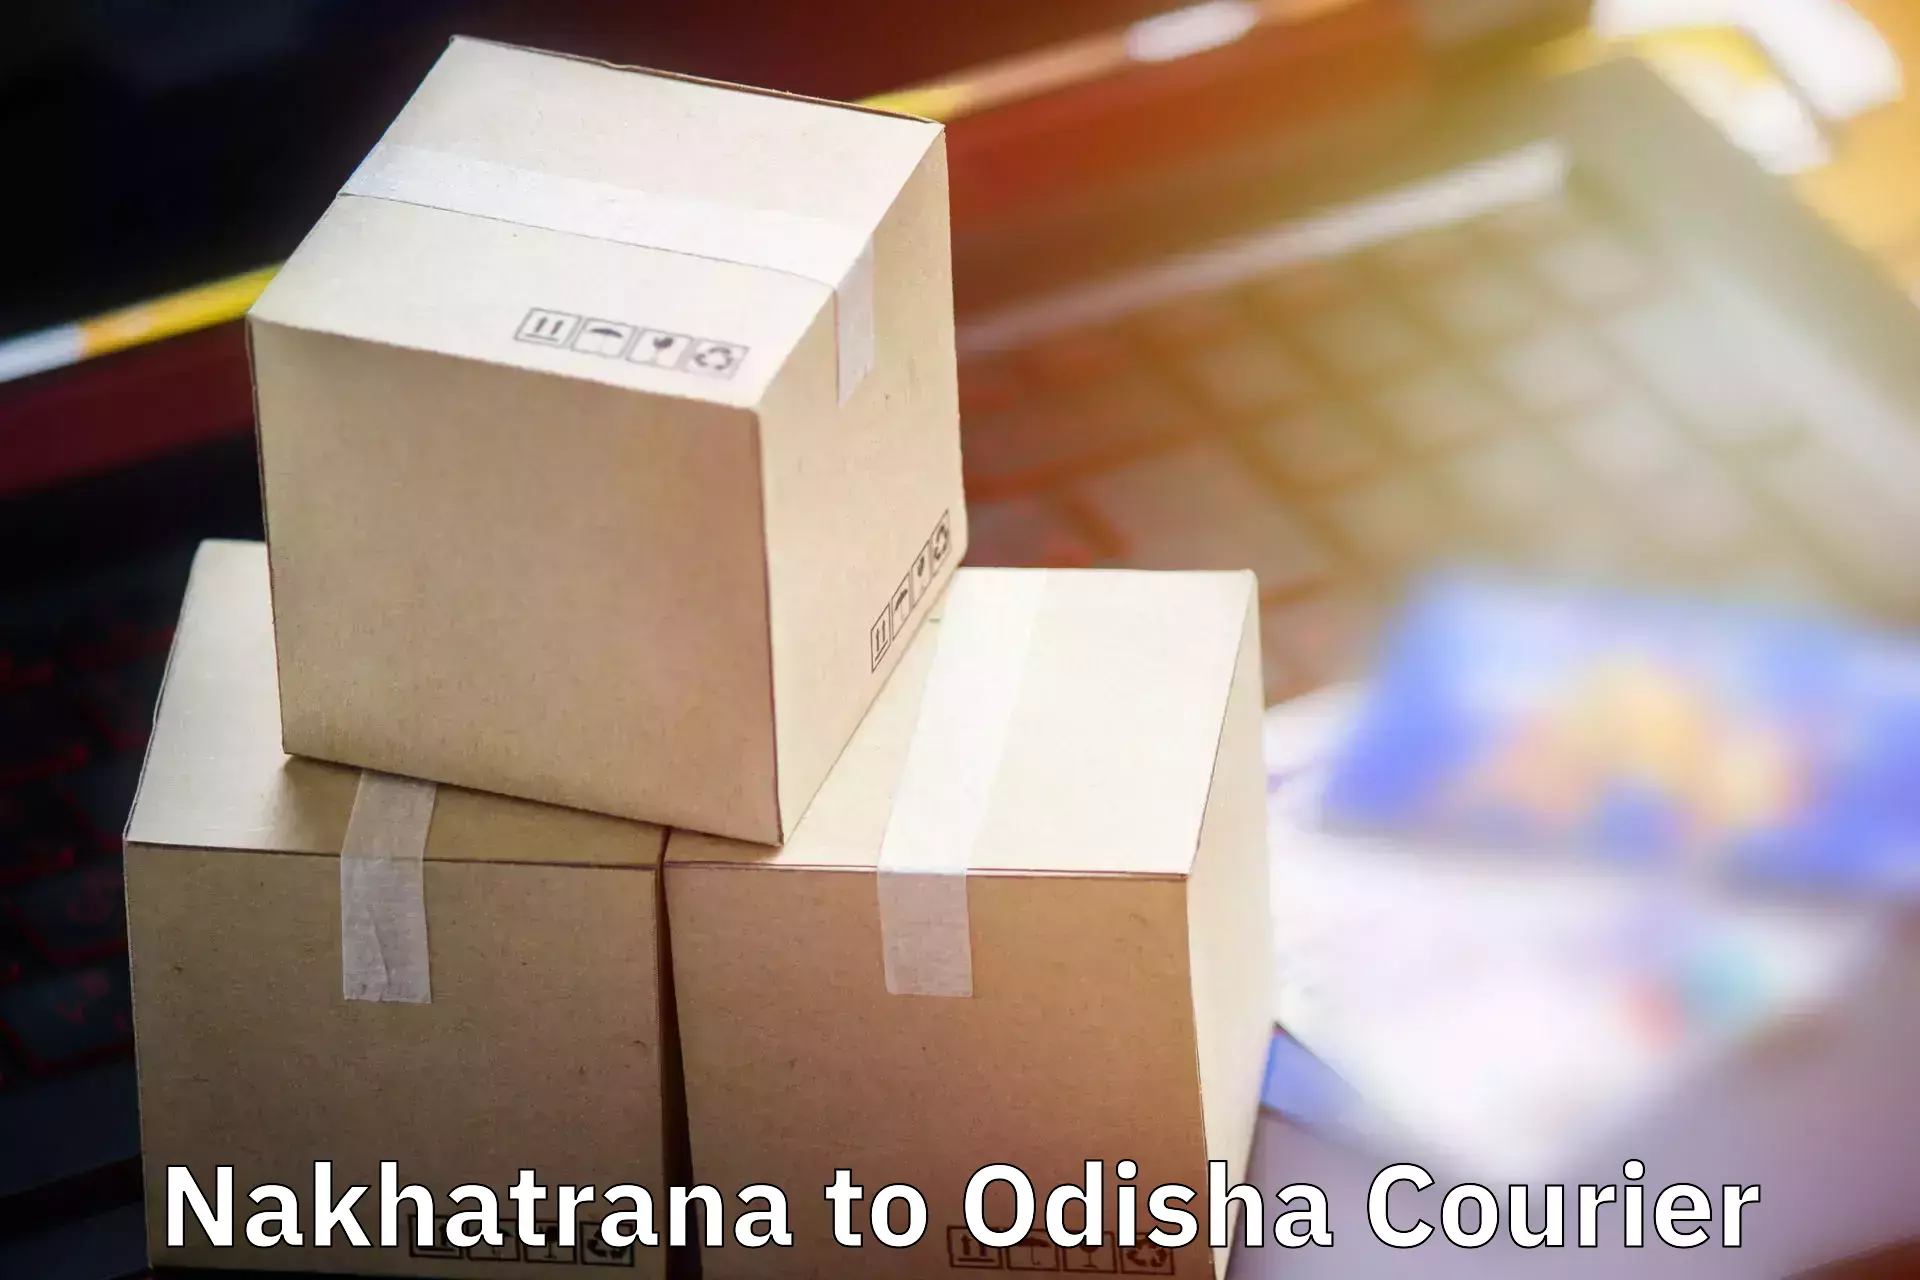 Baggage transport logistics Nakhatrana to Mohana